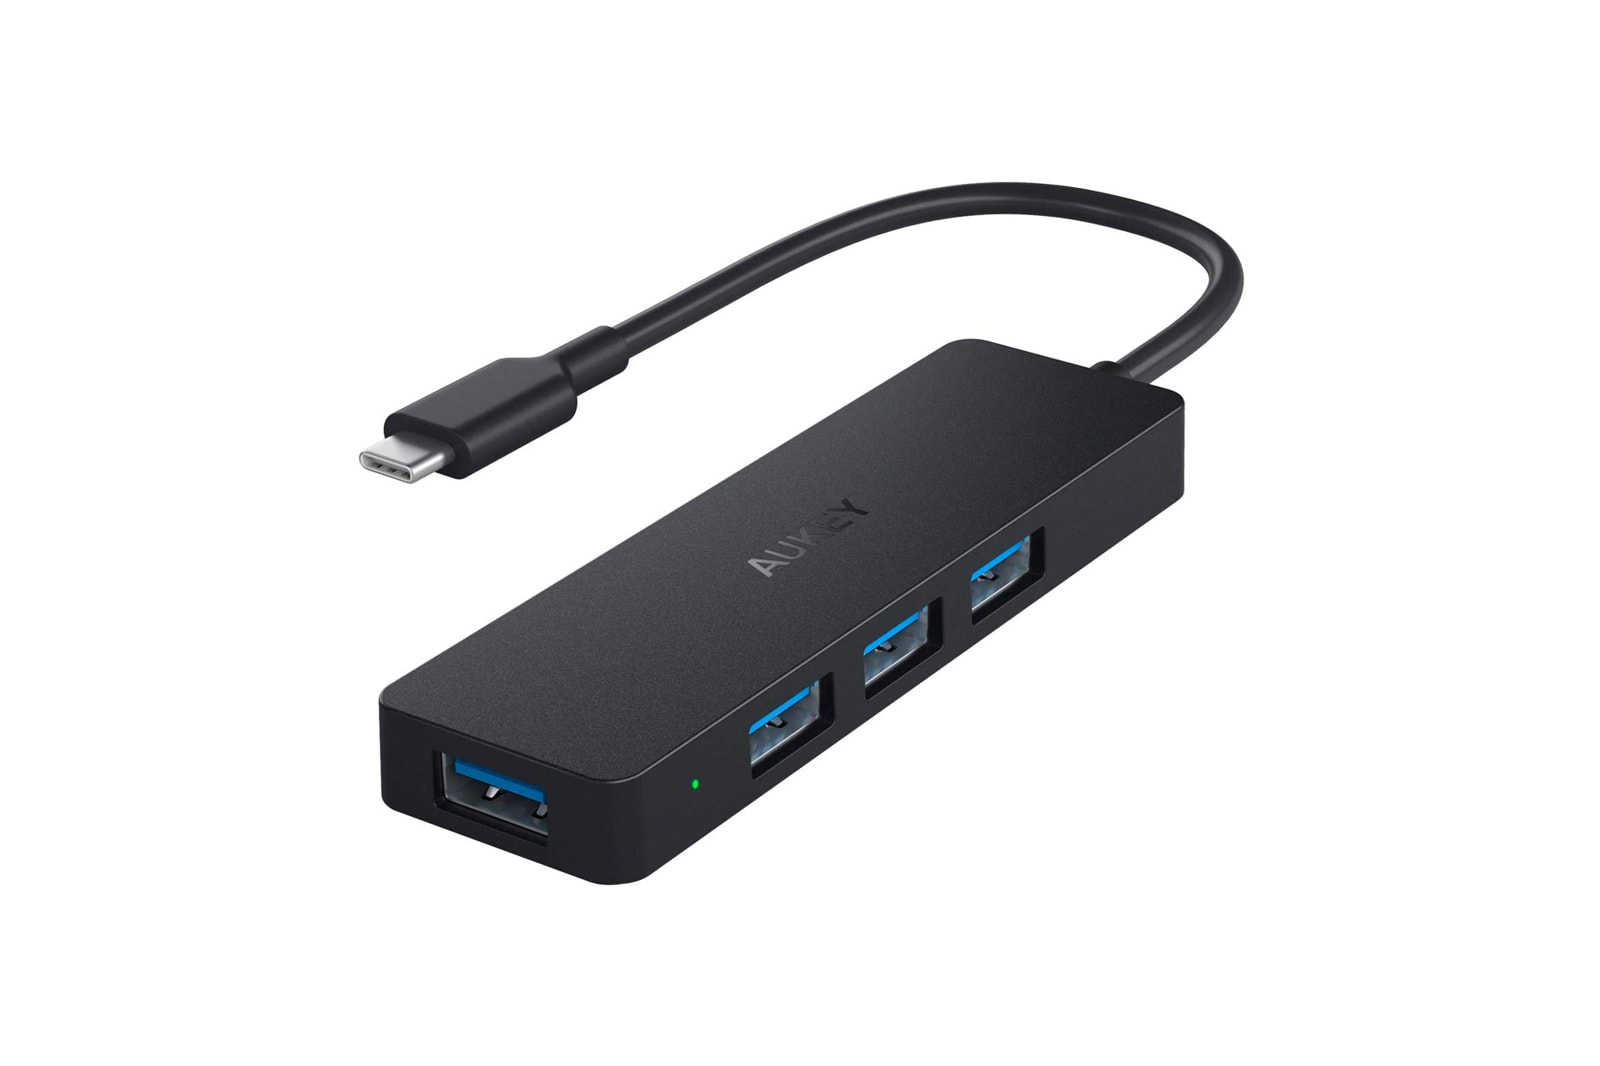 Aukey USB C to 4-Port USB 3.1 Gen 1 Hub (CB-C64)